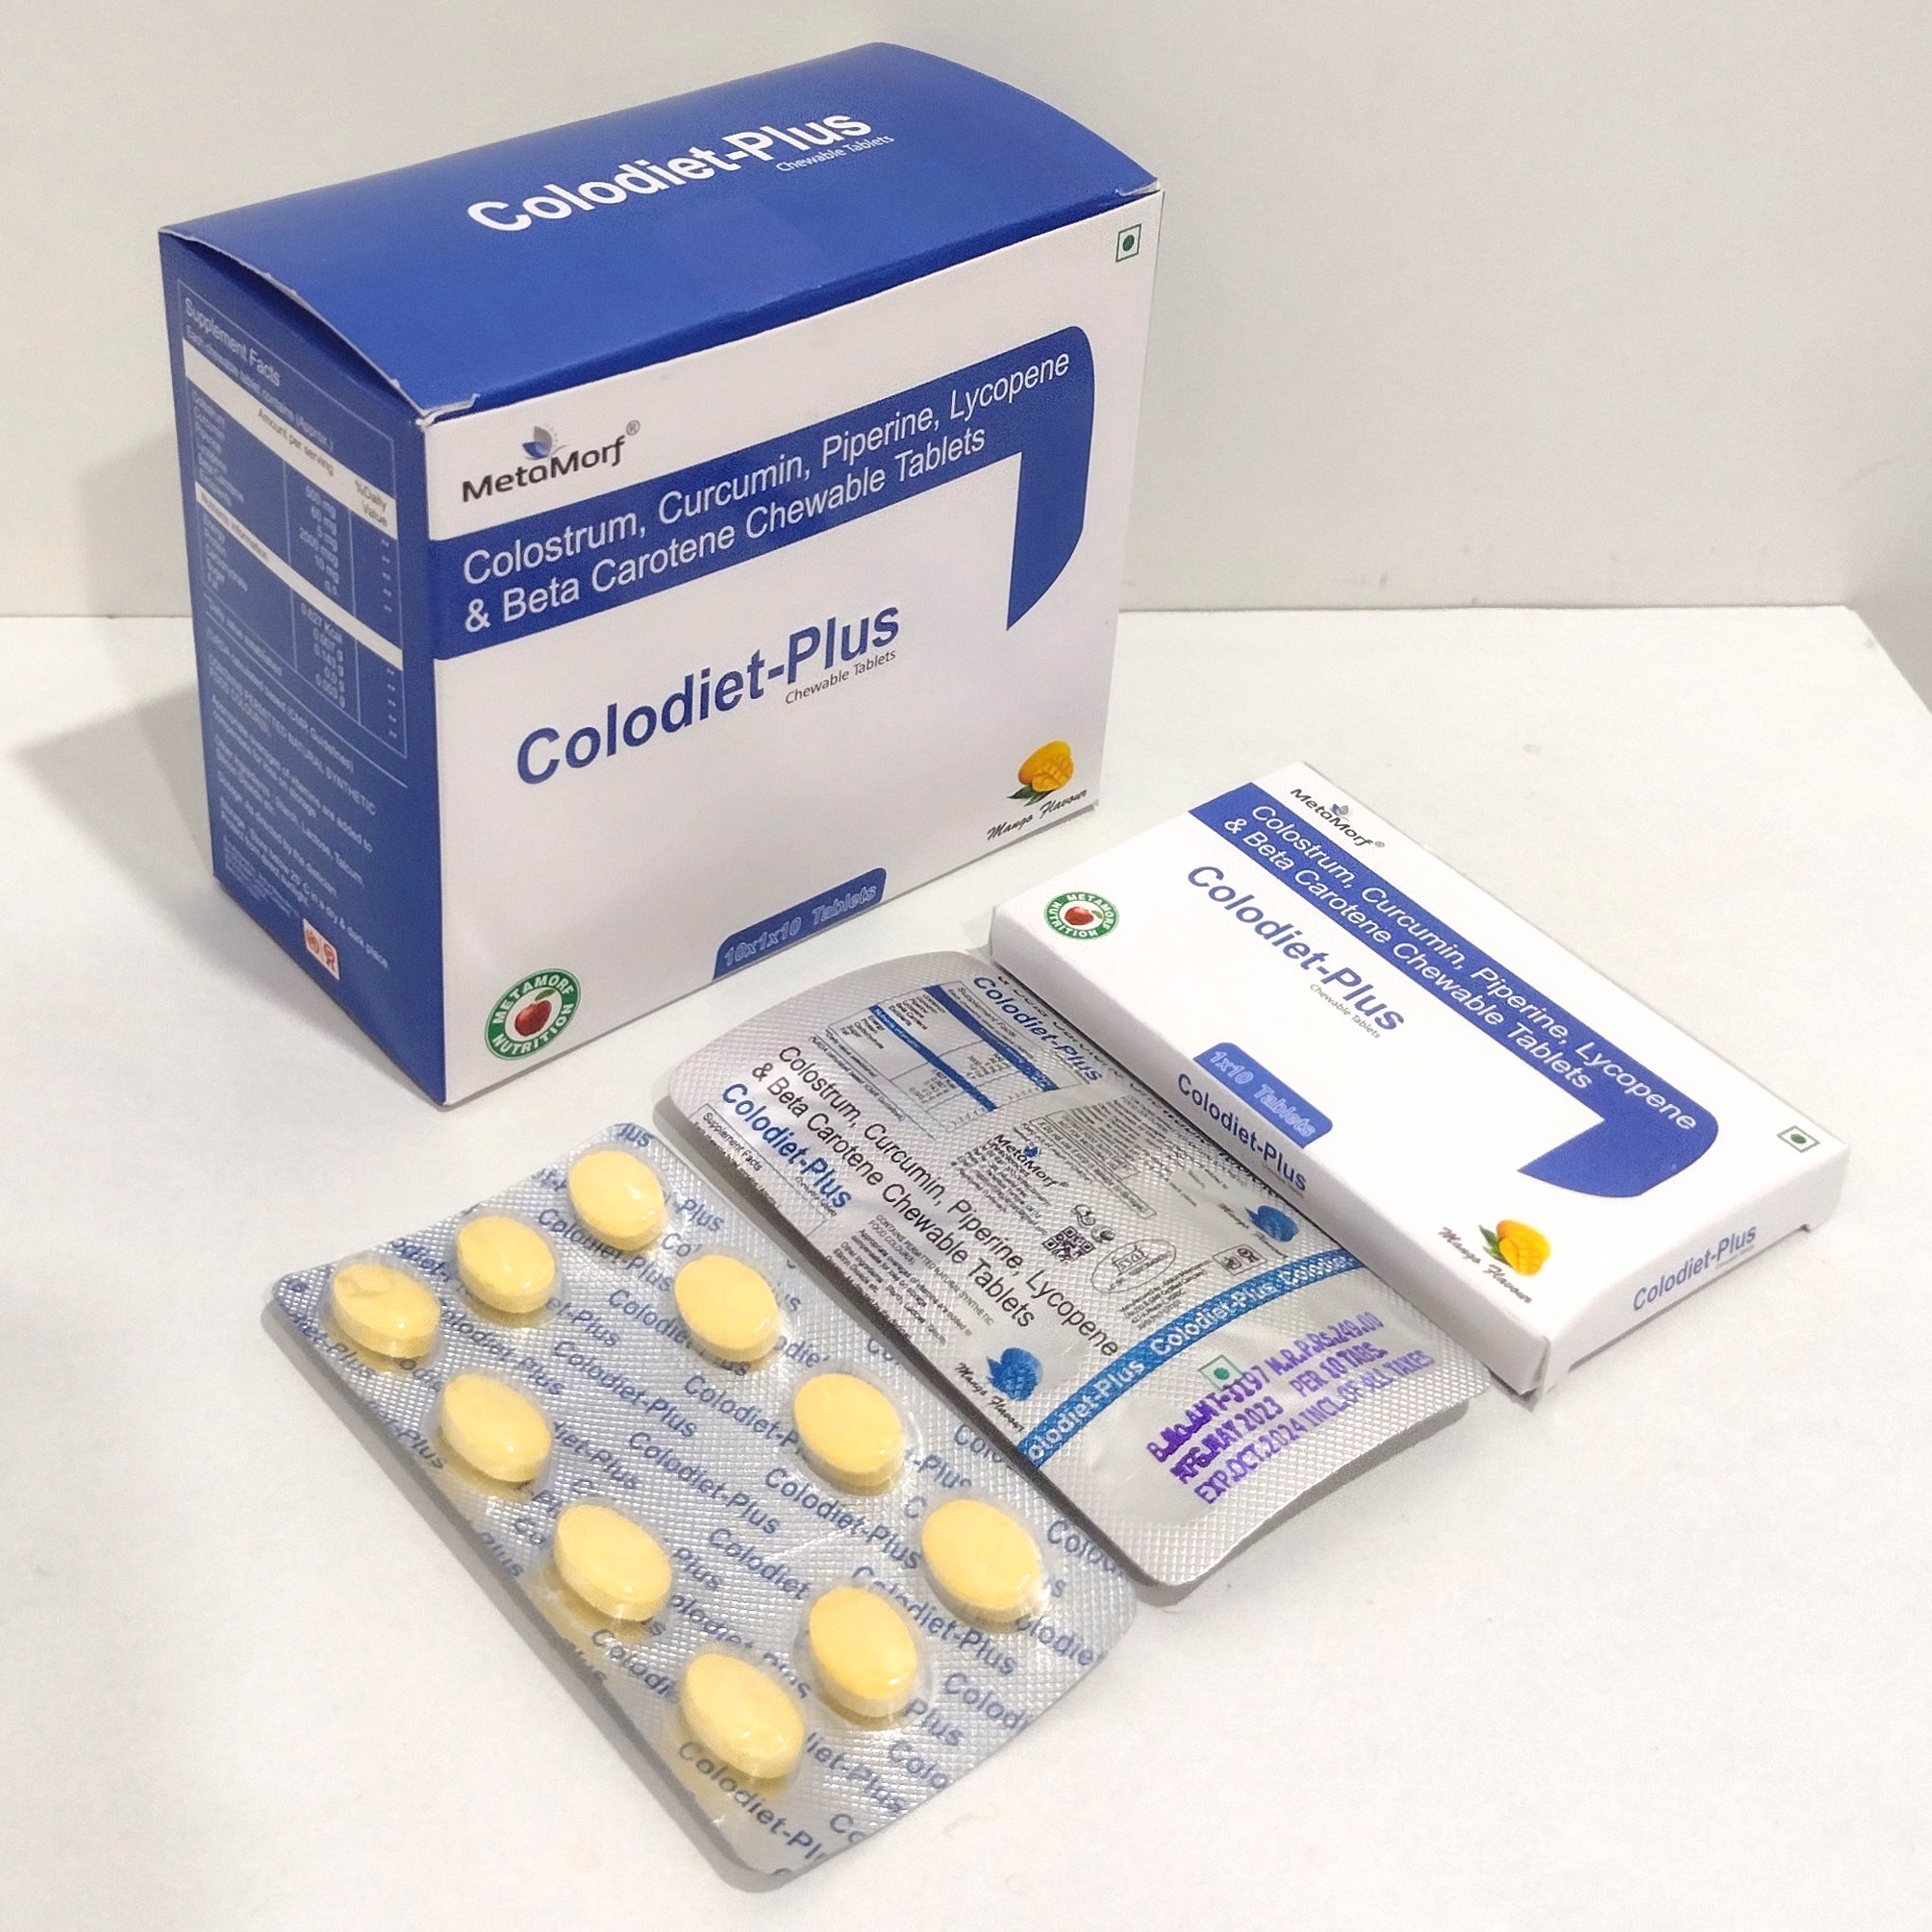 Colodiet-Plus Tablets